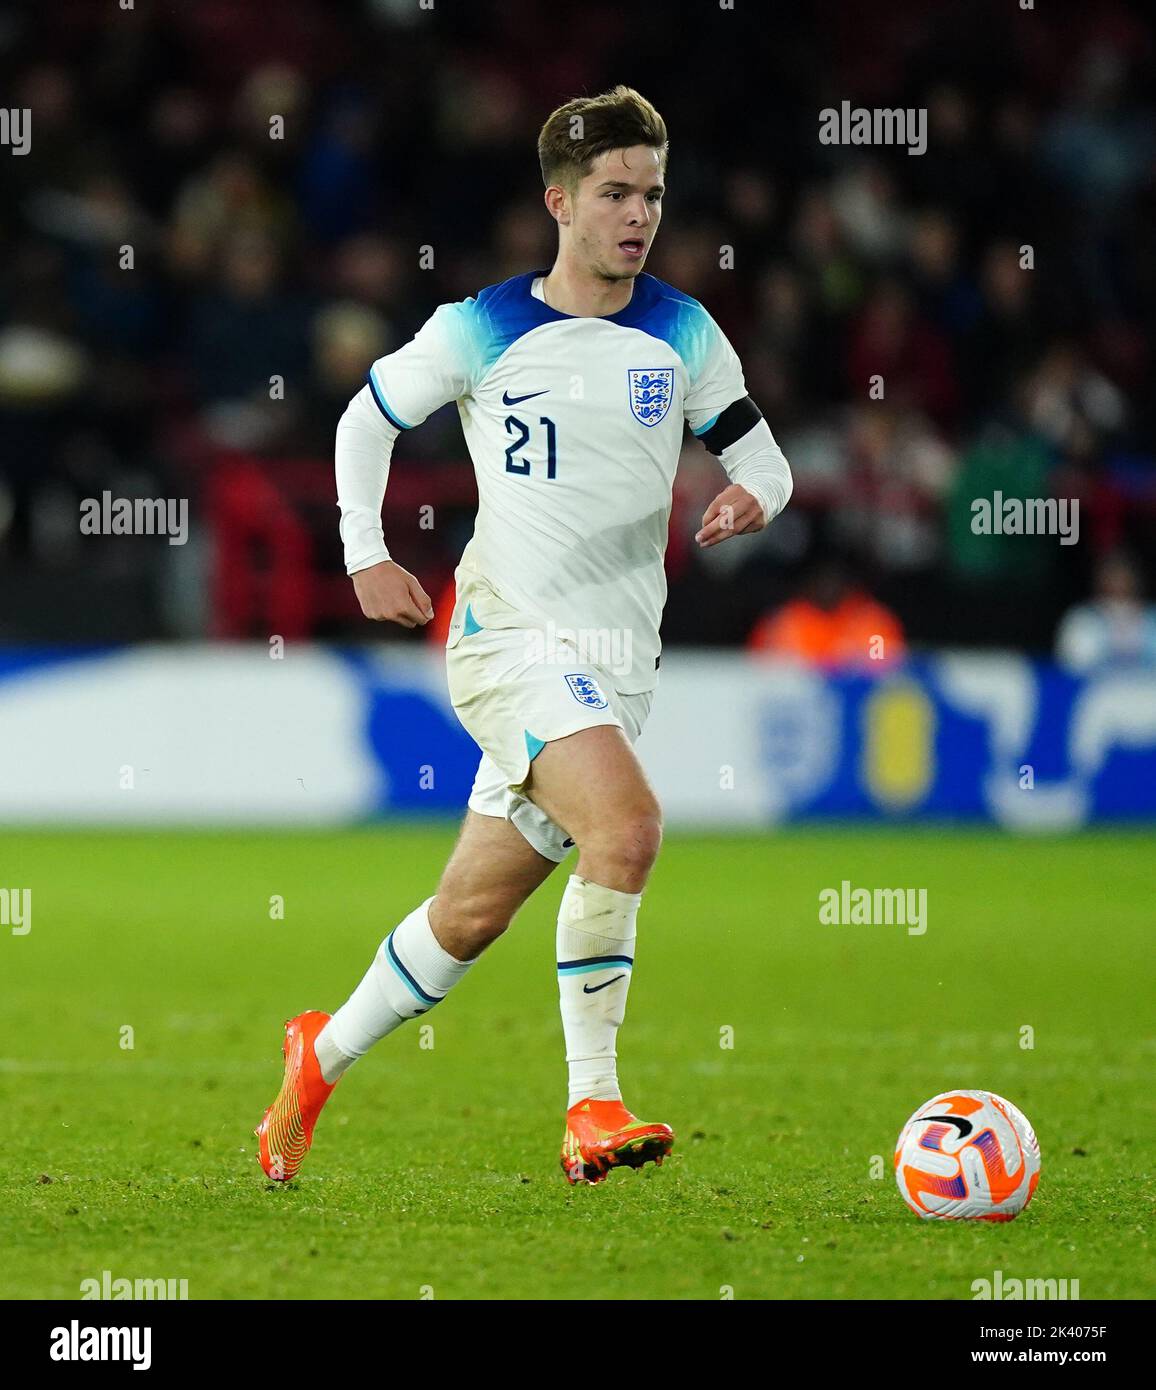 James McAtee d'Angleterre pendant le match amical international des moins de 21 ans à Bramall Lane, Sheffield. Date de la photo: Mardi 27 septembre 2022. Banque D'Images